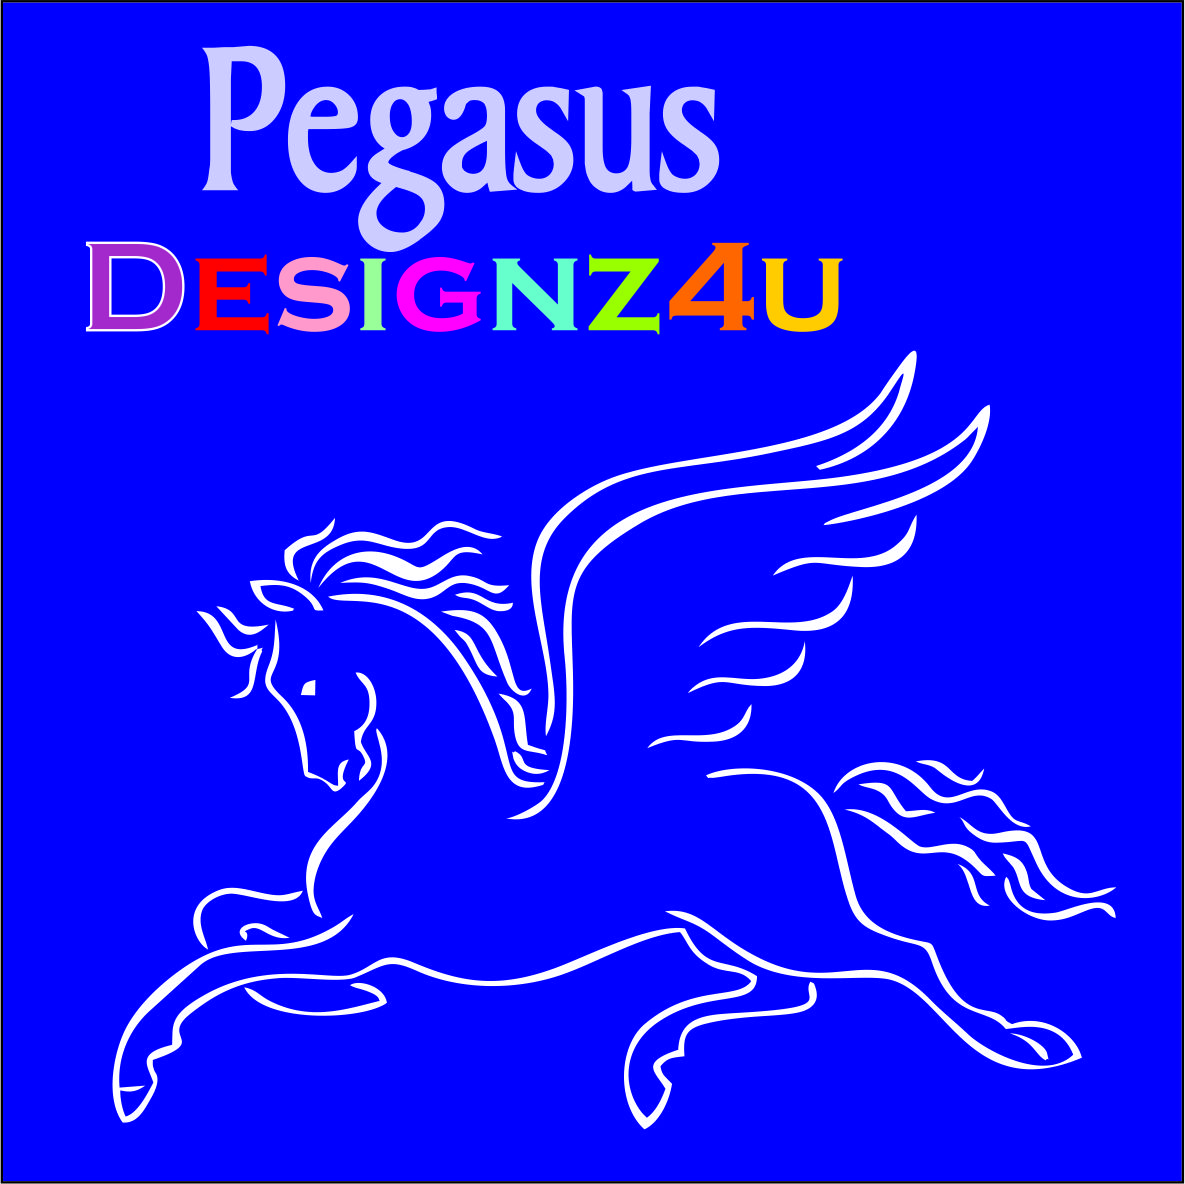 Pegasus Designz4u